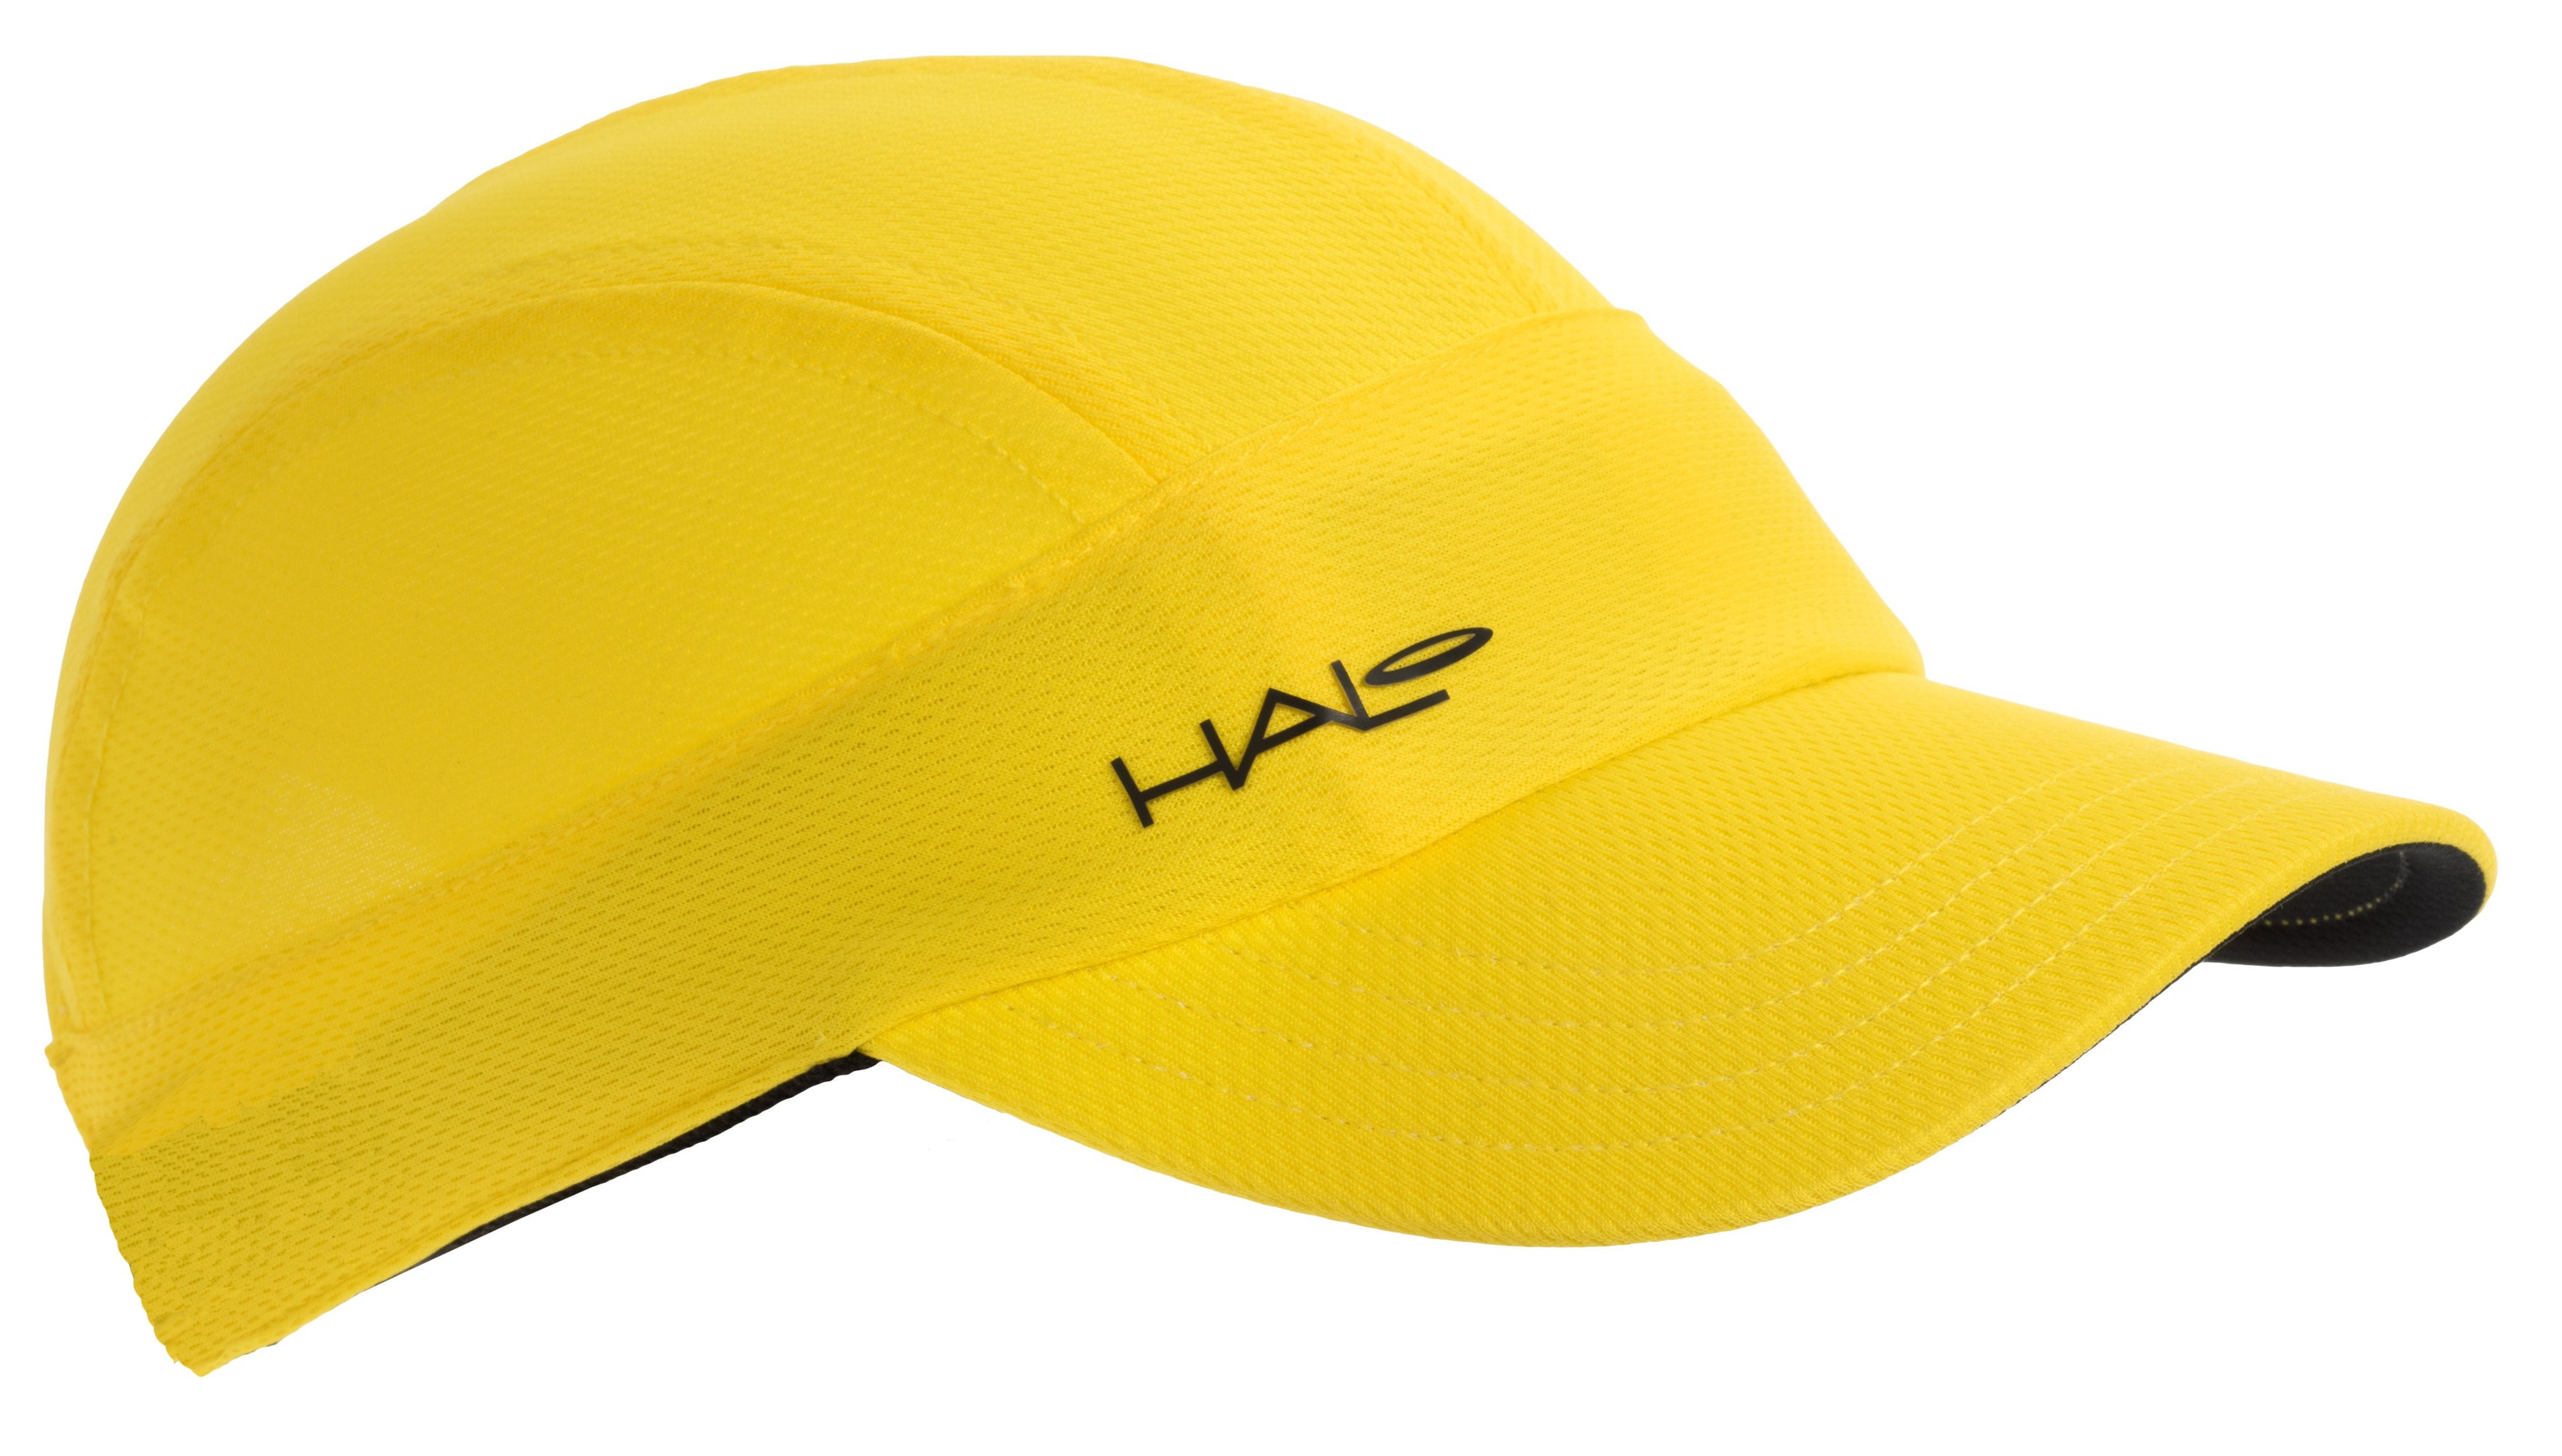 Halo Sport Hat  Halo Headband Canada